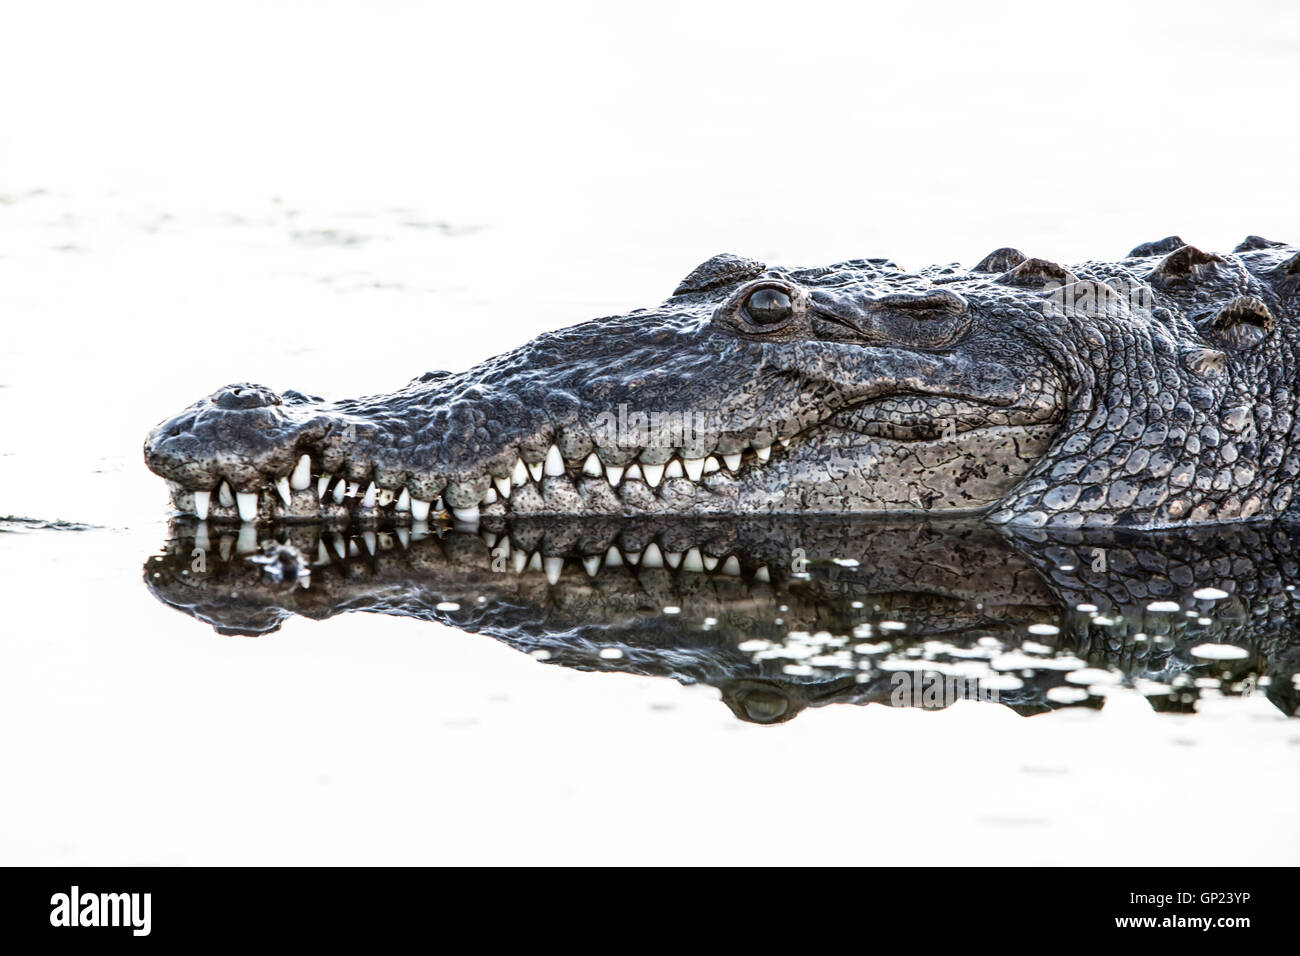 Cabeza de cocodrilo americano Crocodylus acutus, Turneffe Atoll, Caribe, Belice Foto de stock